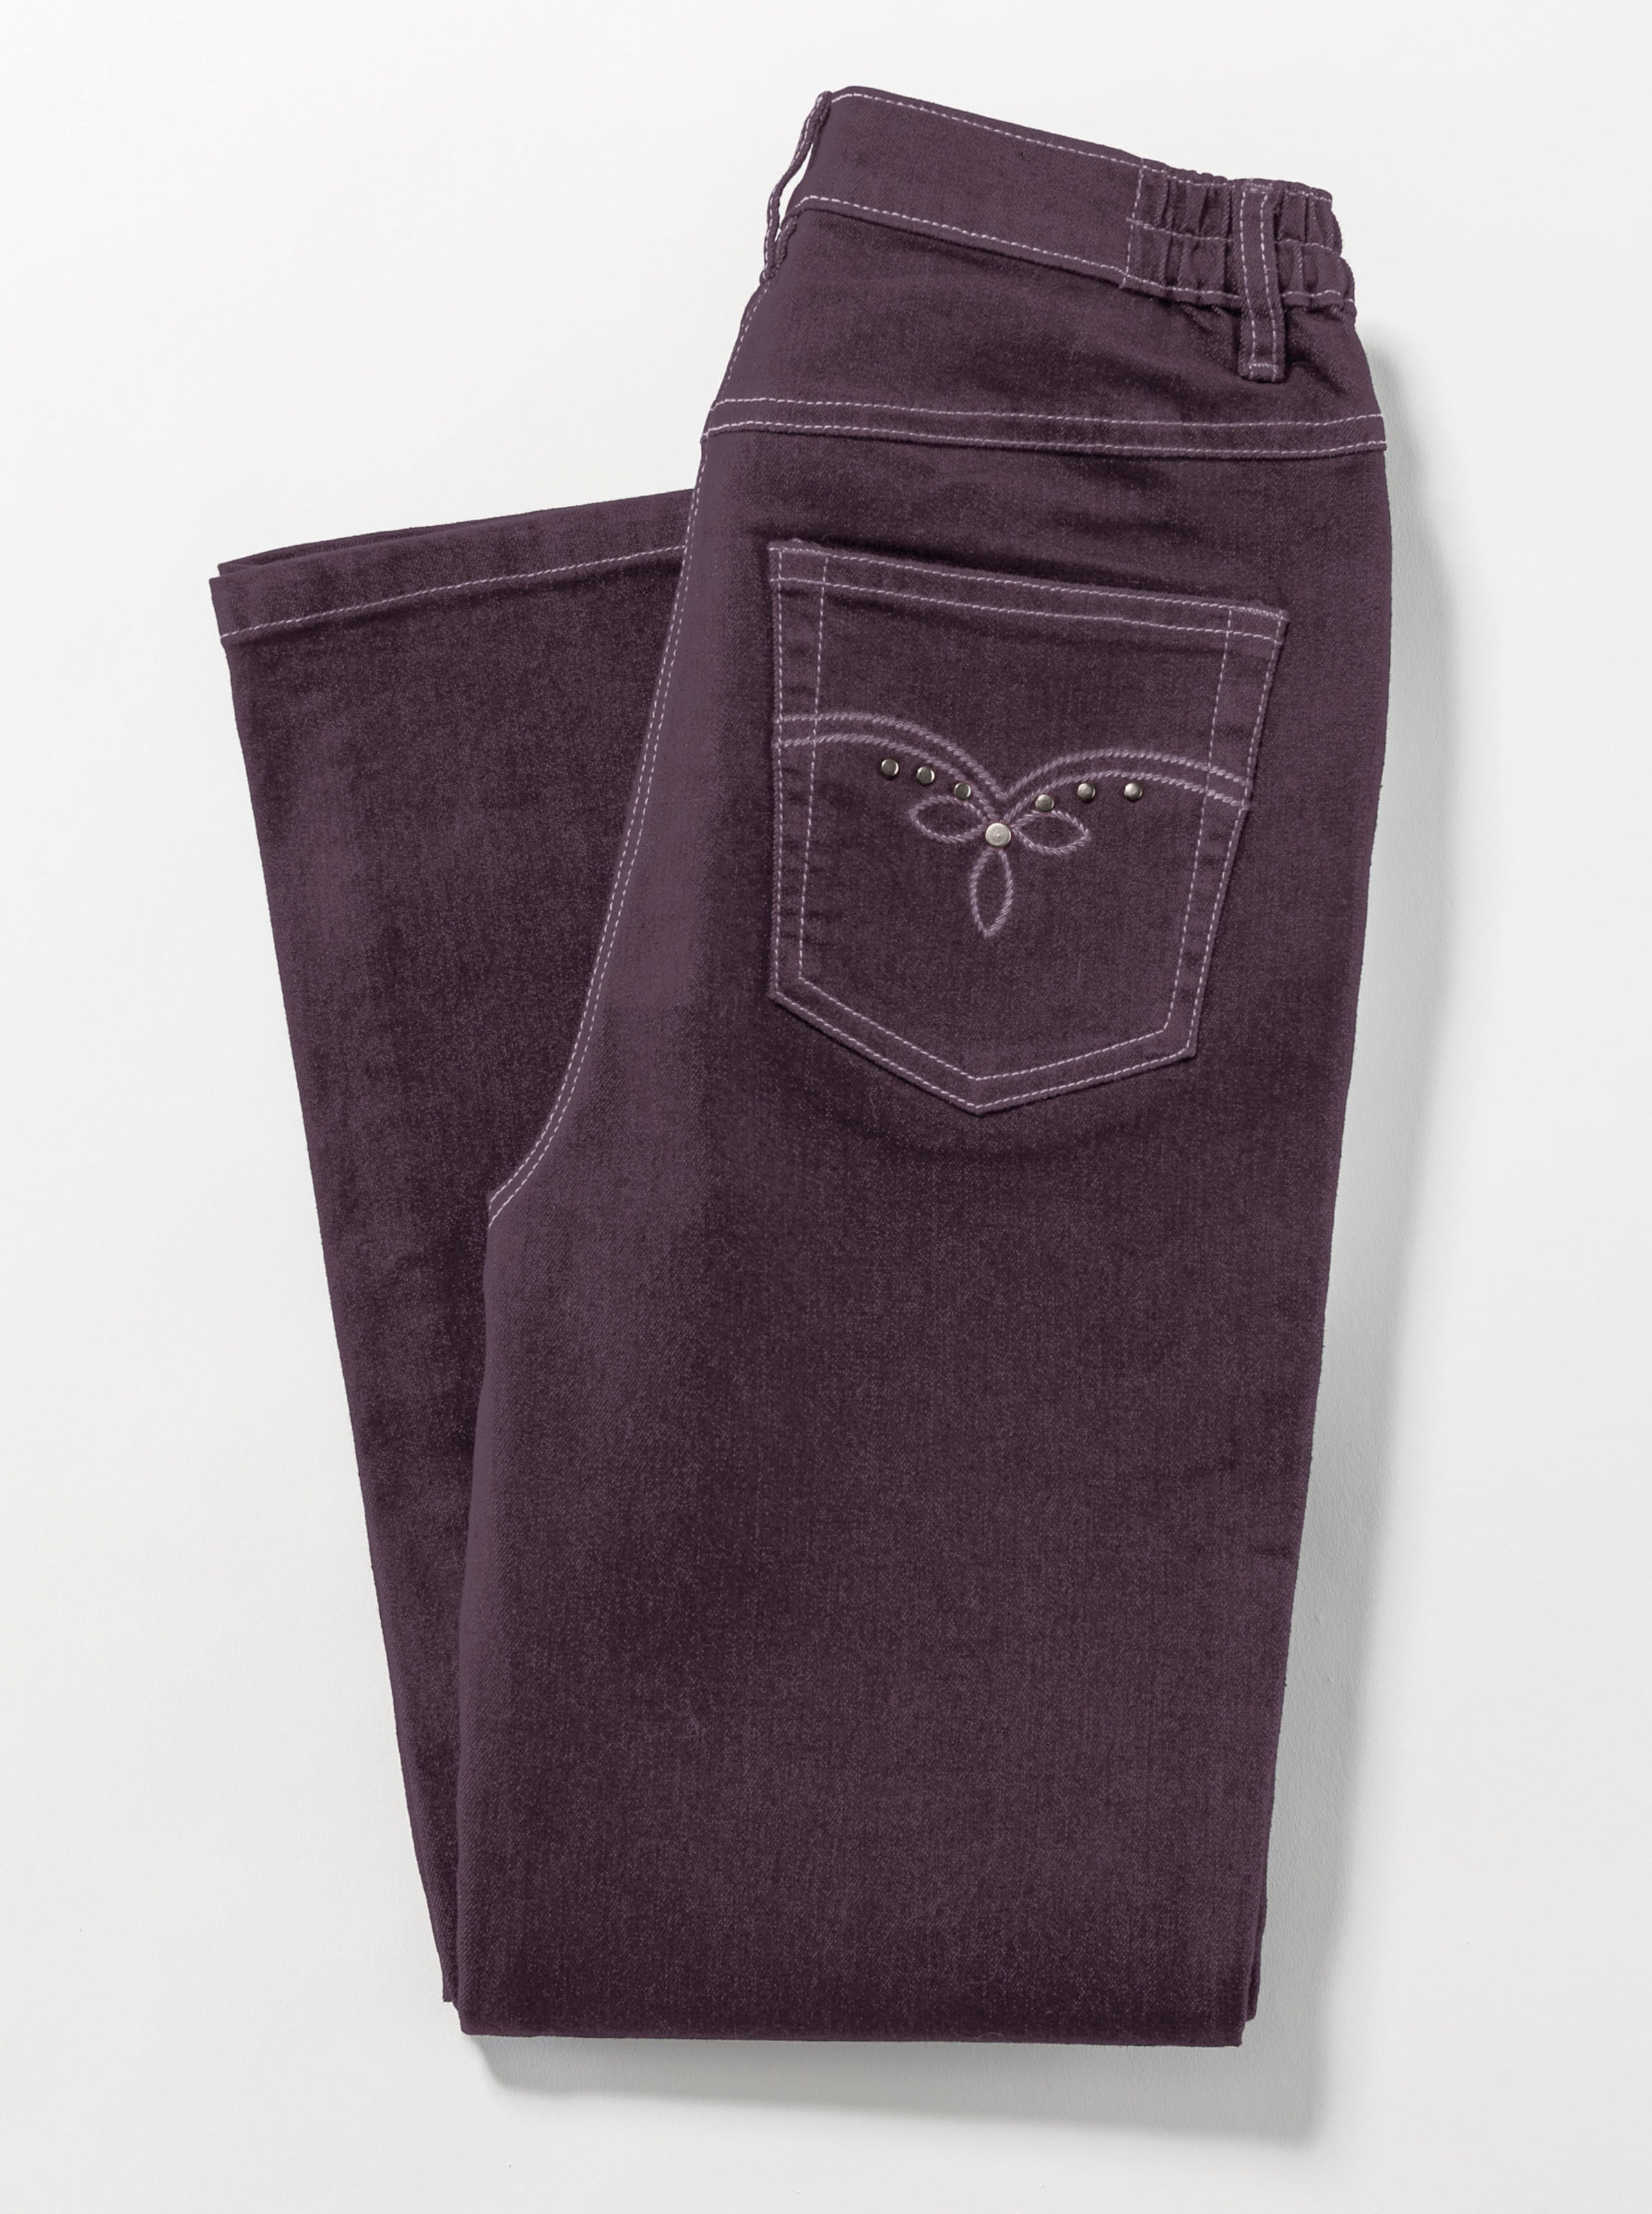 Jeans günstig Kaufen-5-Pocket-Jeans in aubergine von heine. 5-Pocket-Jeans in aubergine von heine <![CDATA[Die Jeans in 5-Pocket-Form ist dank seitlichem Dehnbund besonders komfortabel. 2 runde Taschen vorne. 1 Münztasche. 2 Taschen hinten mit schmückender Stickerei und Dek